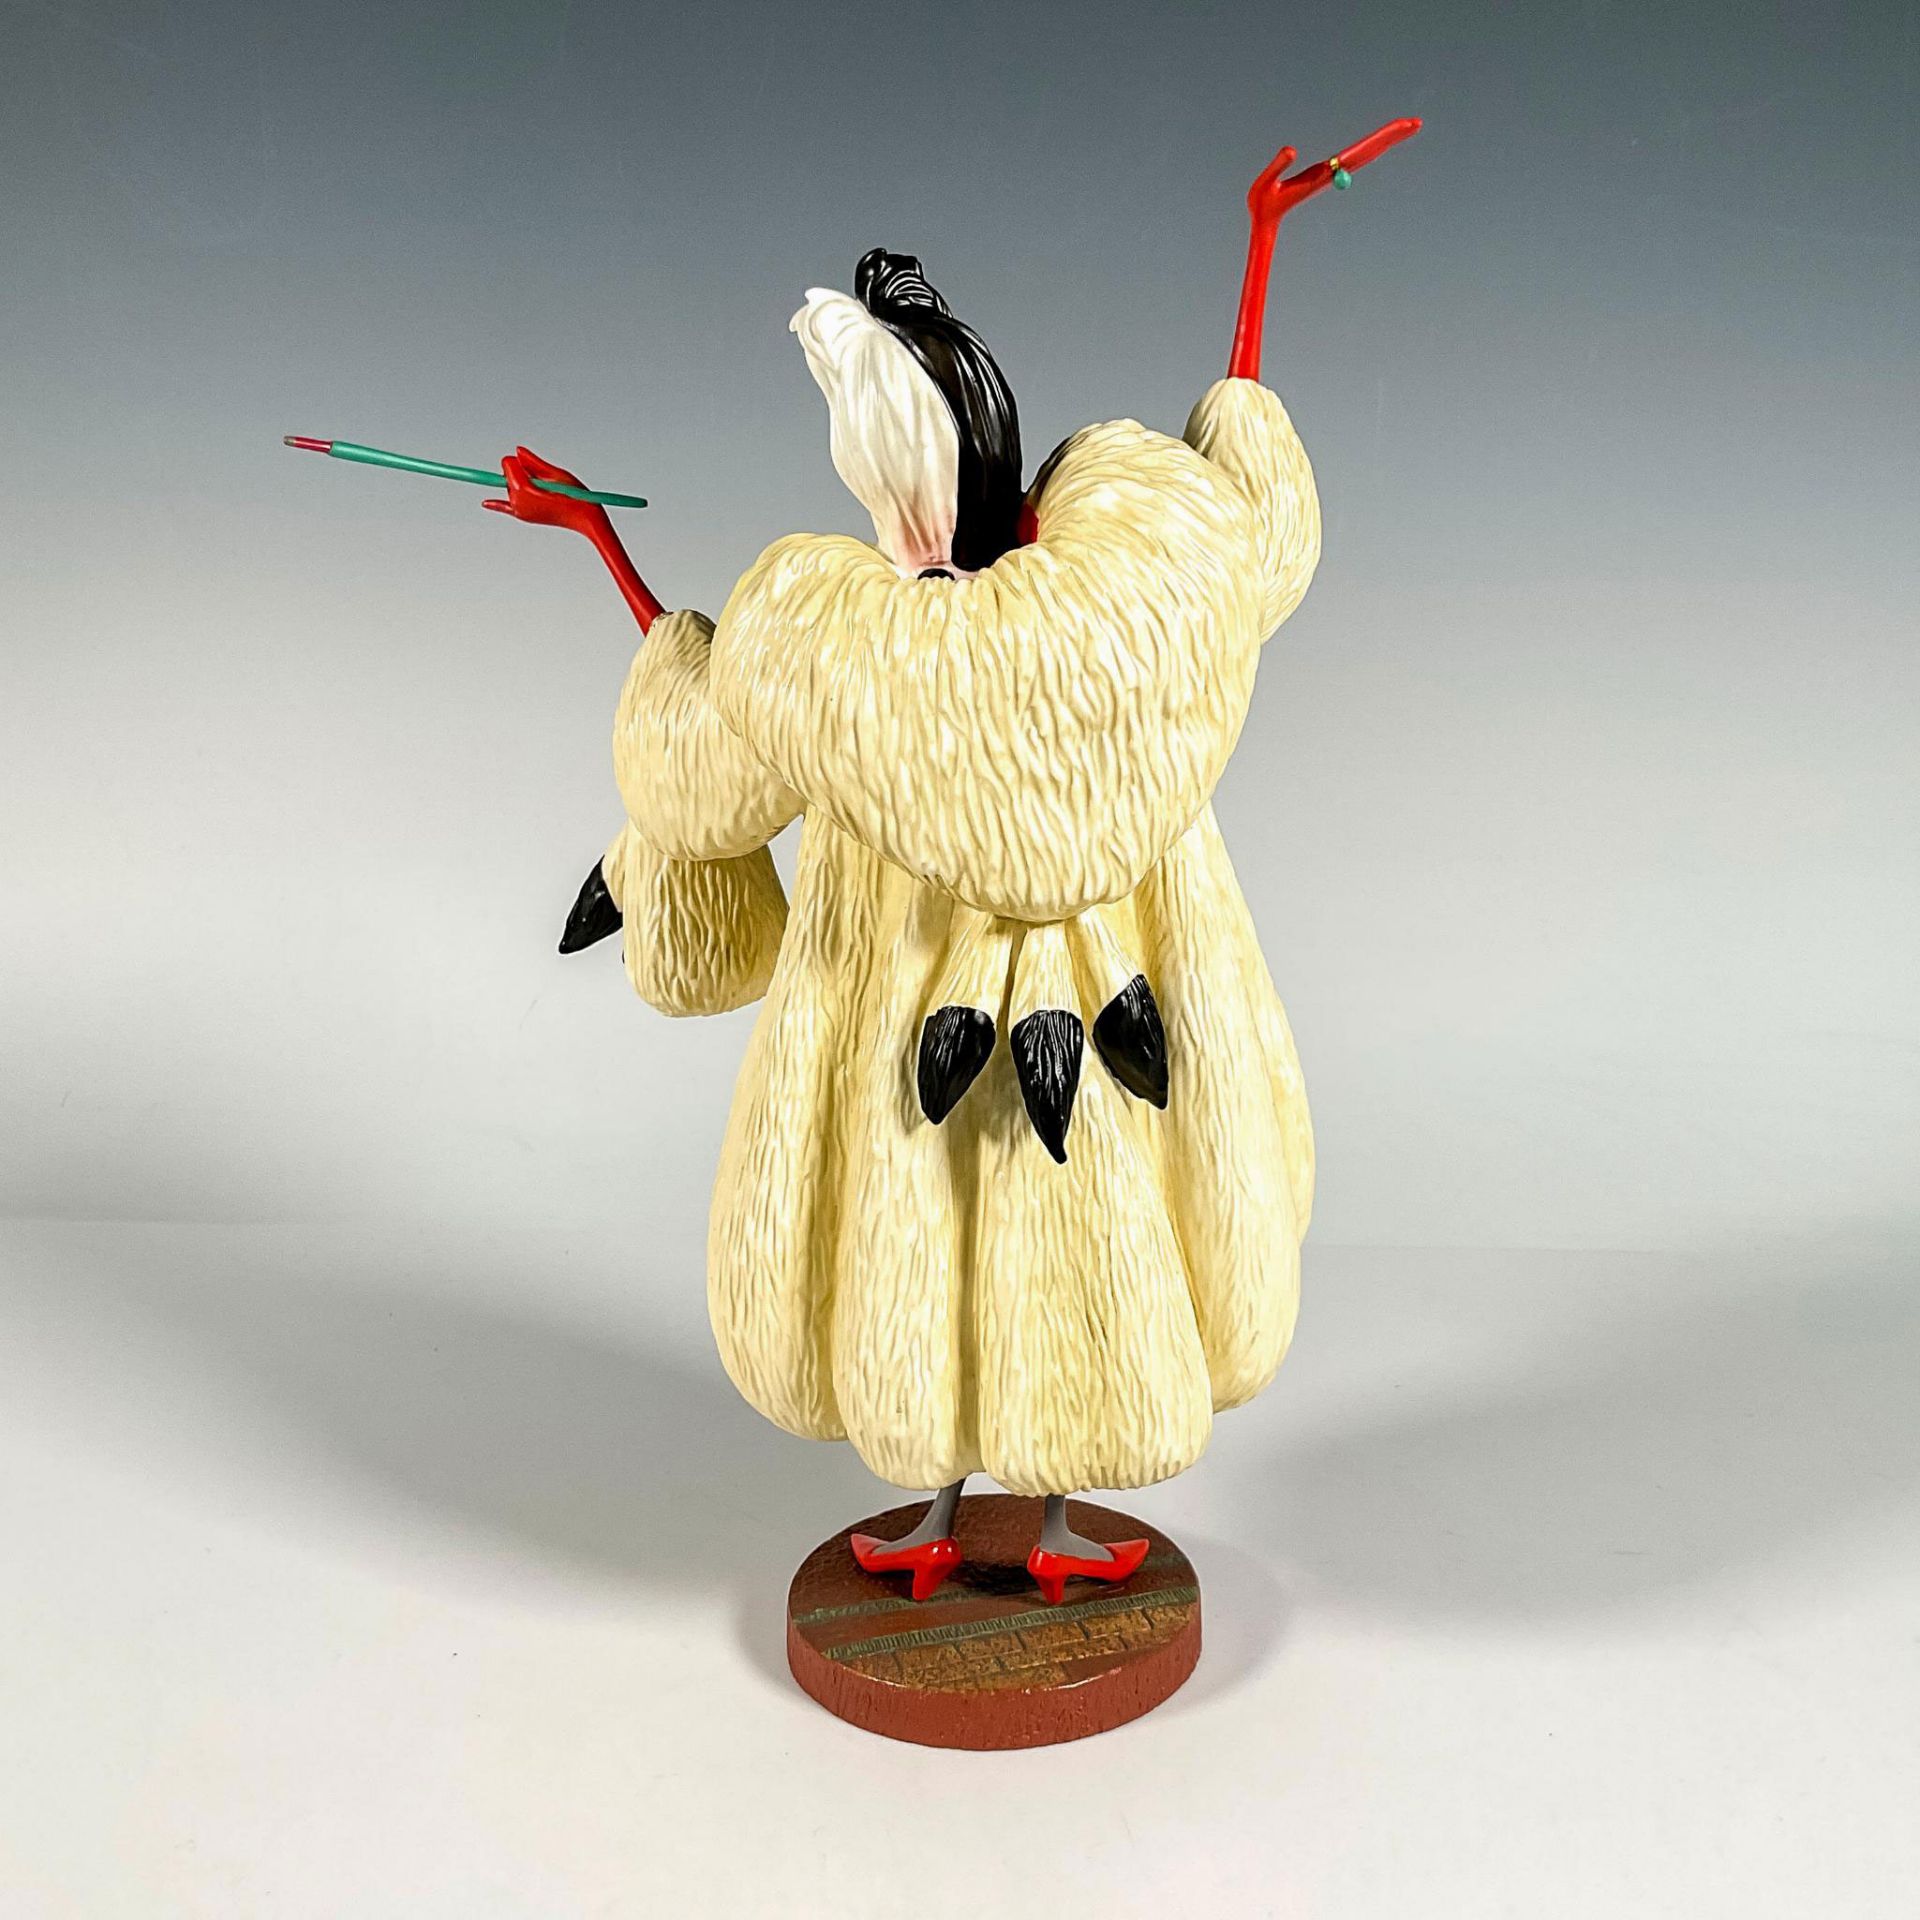 Walt Disney Classics Figurine, Cruella De Vil - Image 2 of 4